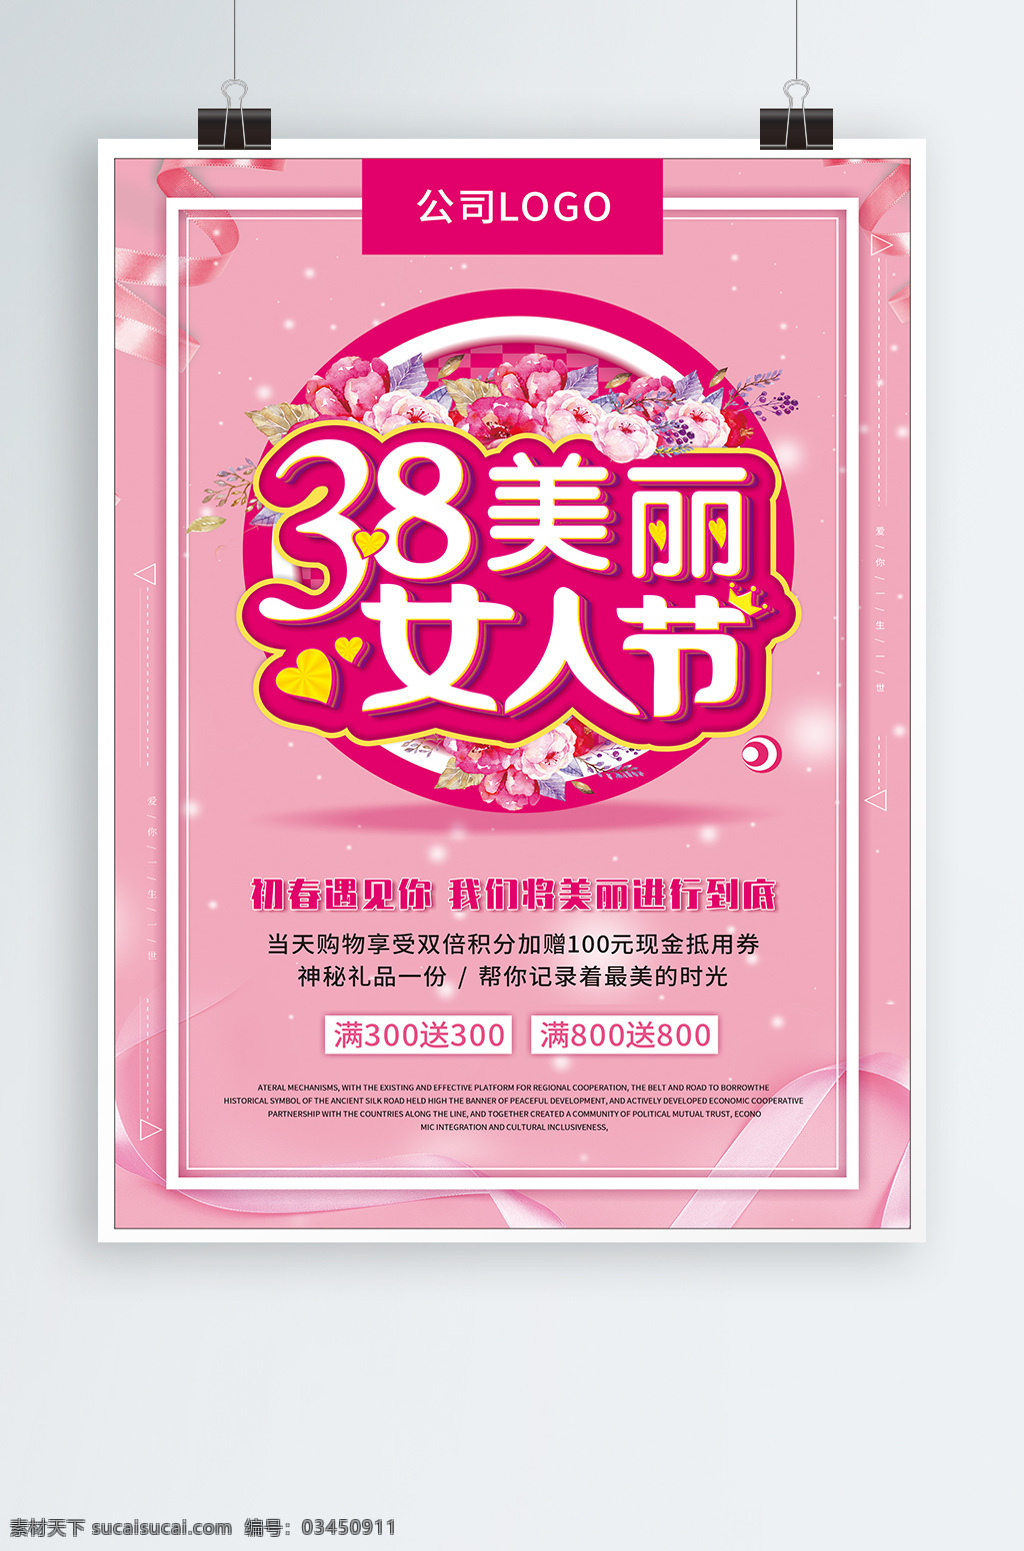 38 妇女节 海报 美丽 女人 节 节日海报 粉红 pop 化妆品海报 美丽女人节 妇女节快乐 快乐 粉色 美丽女人 主题 3月